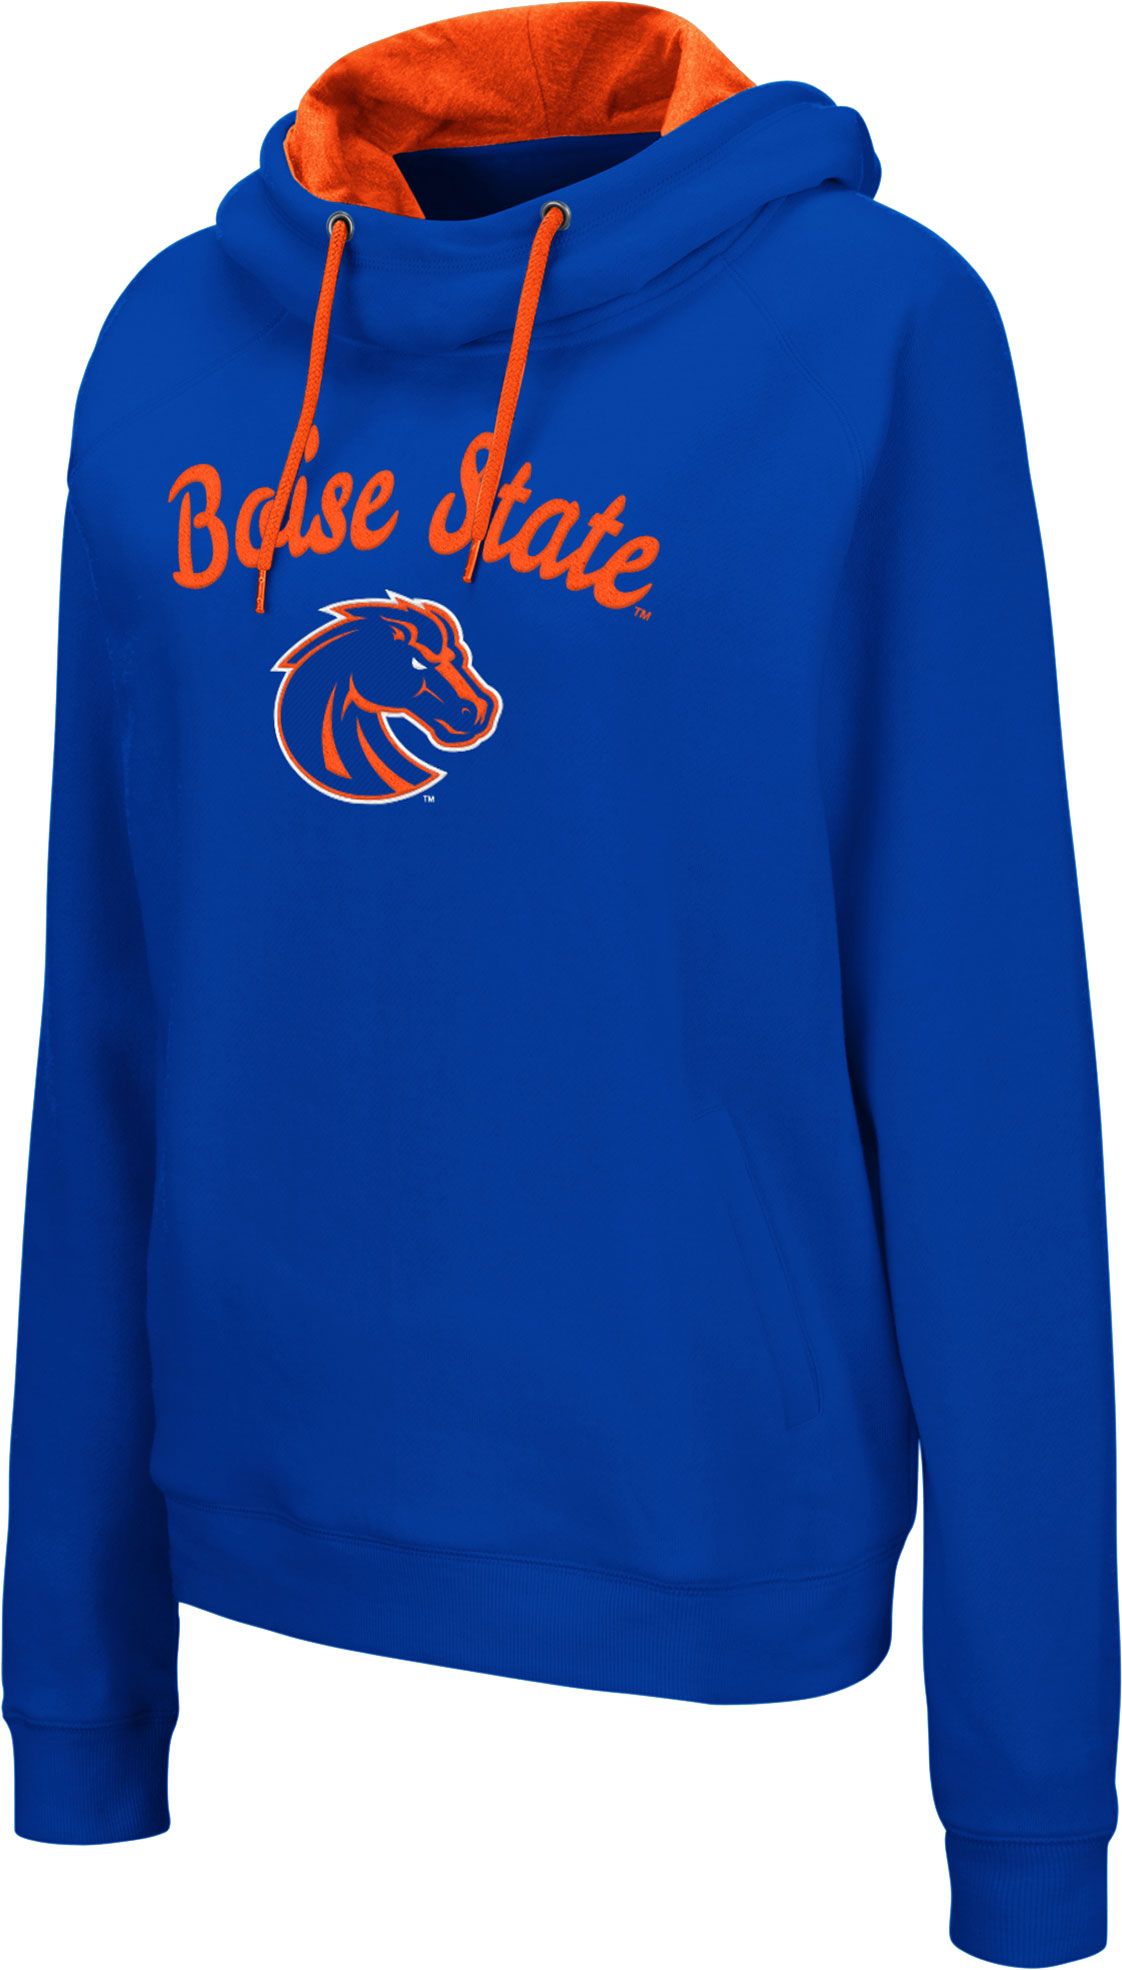 boise state women's sweatshirts